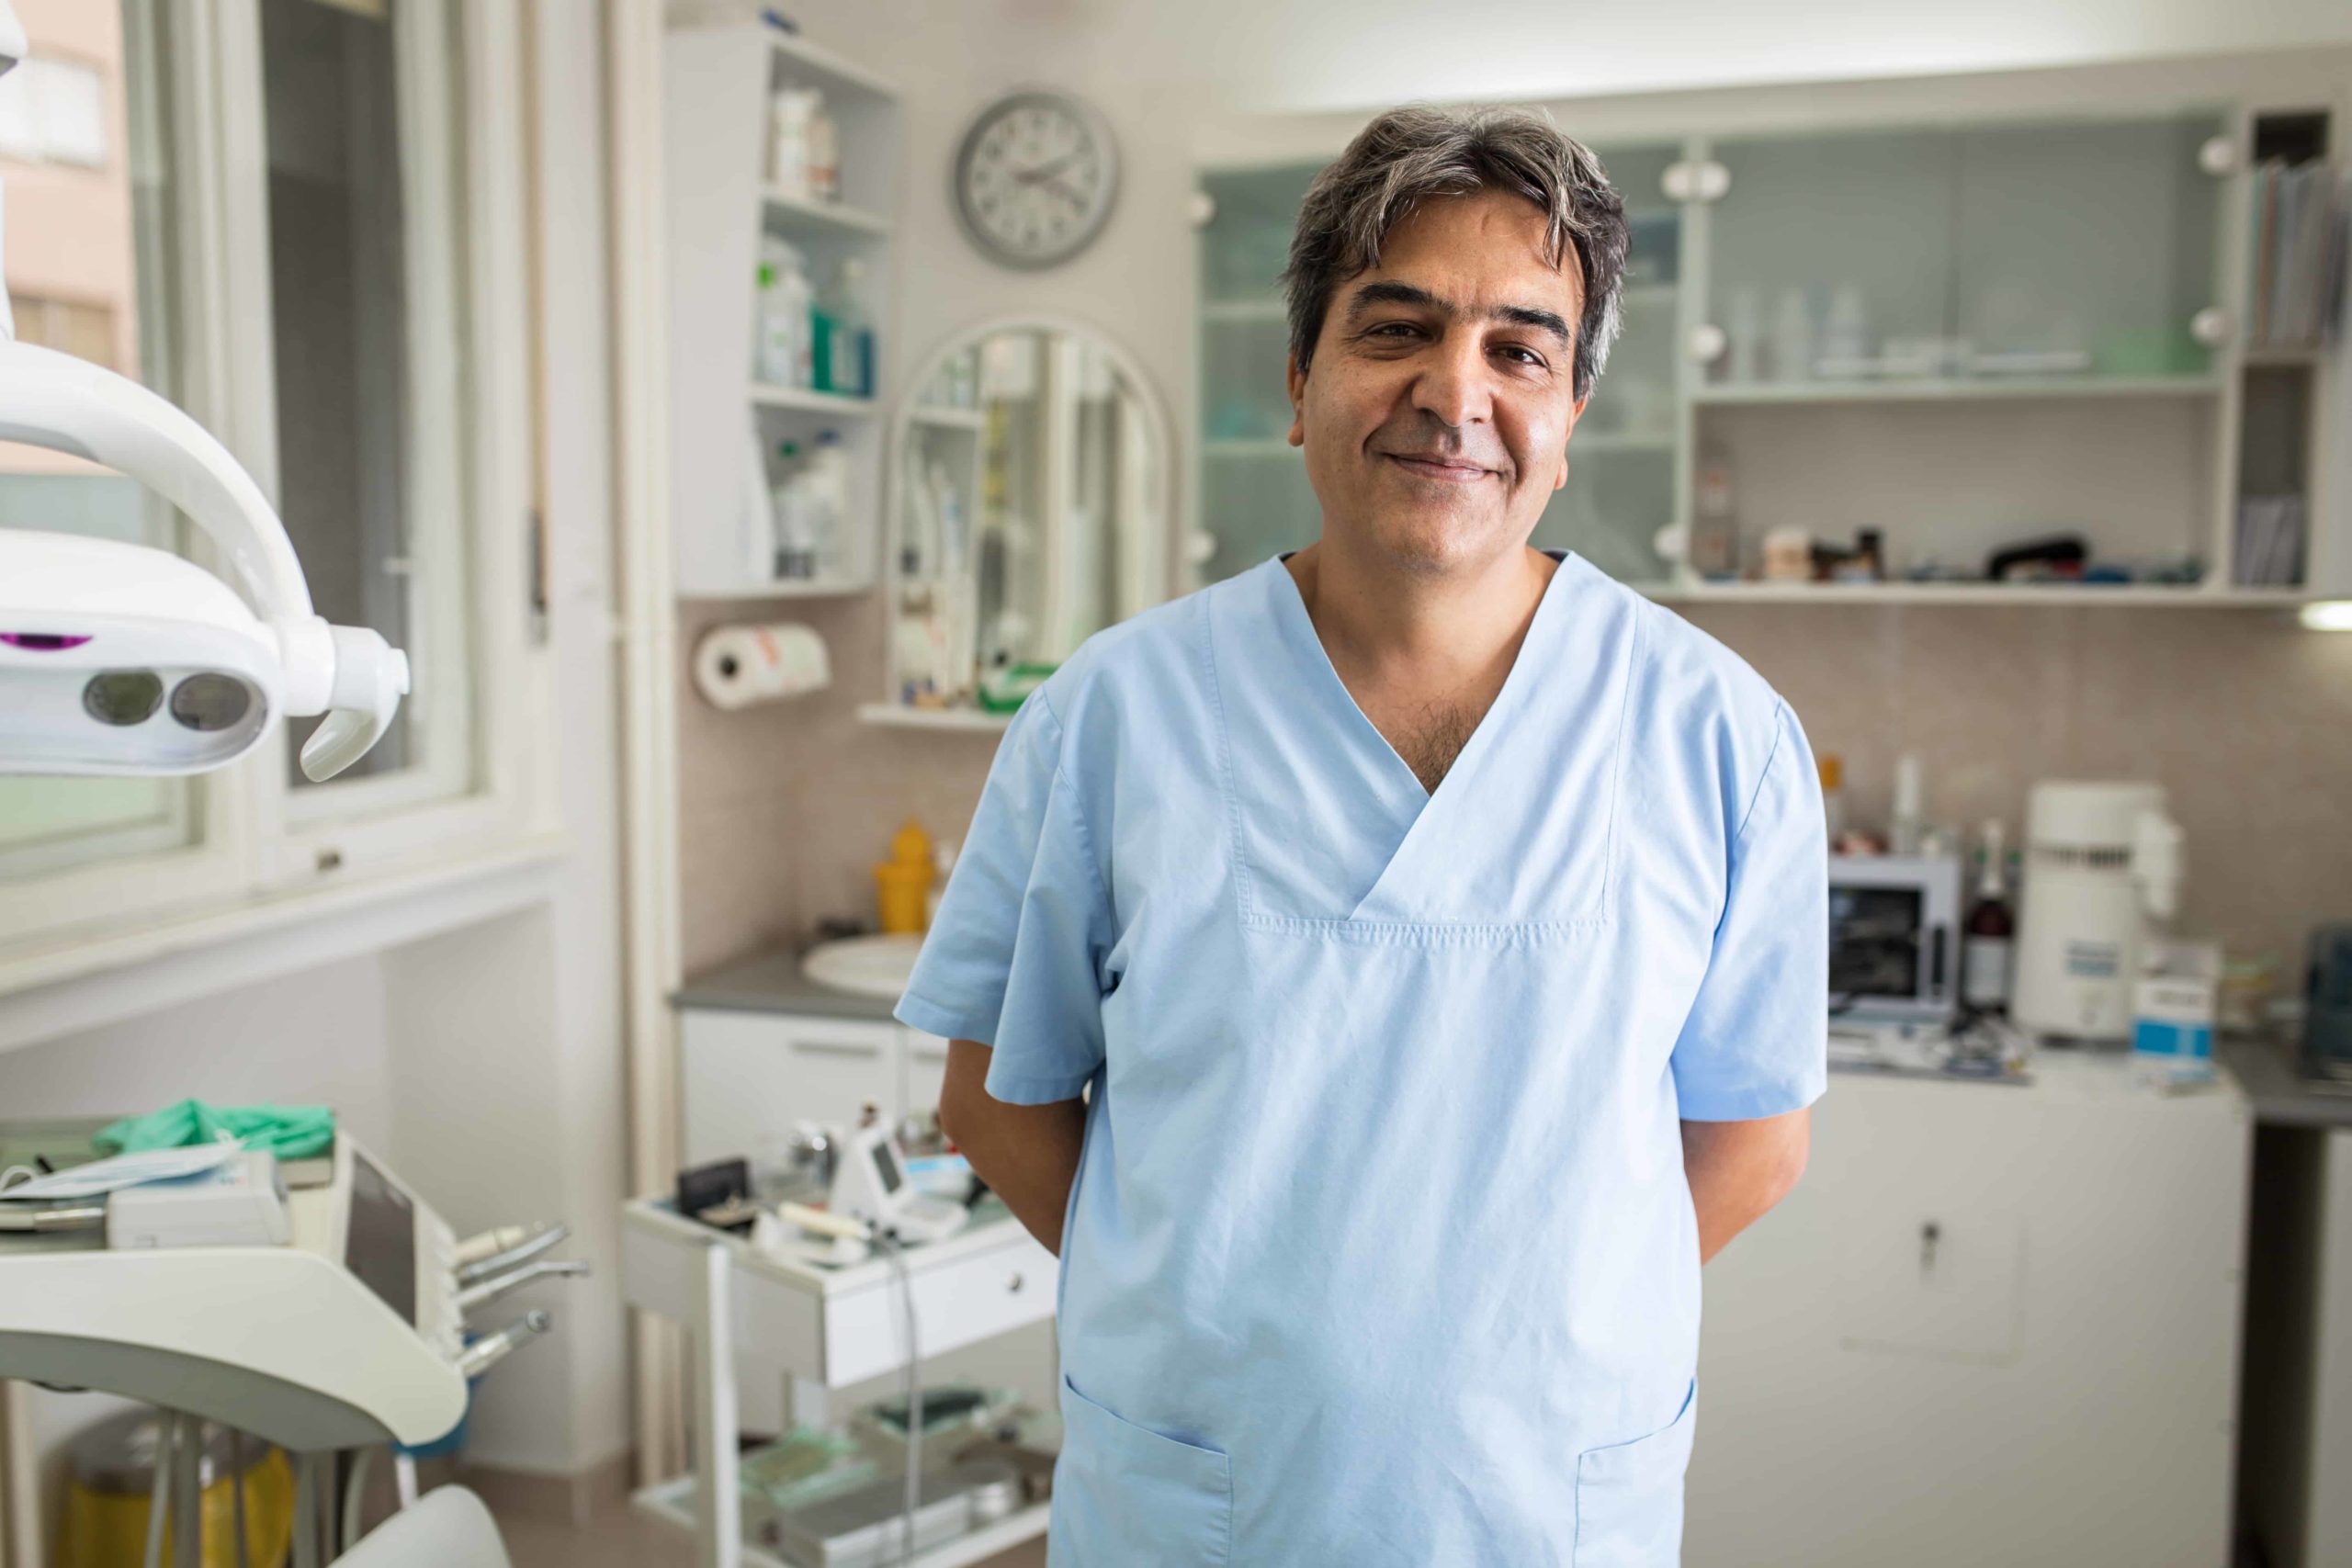 NHS Orthodontics tenders 2020 – is it too late?